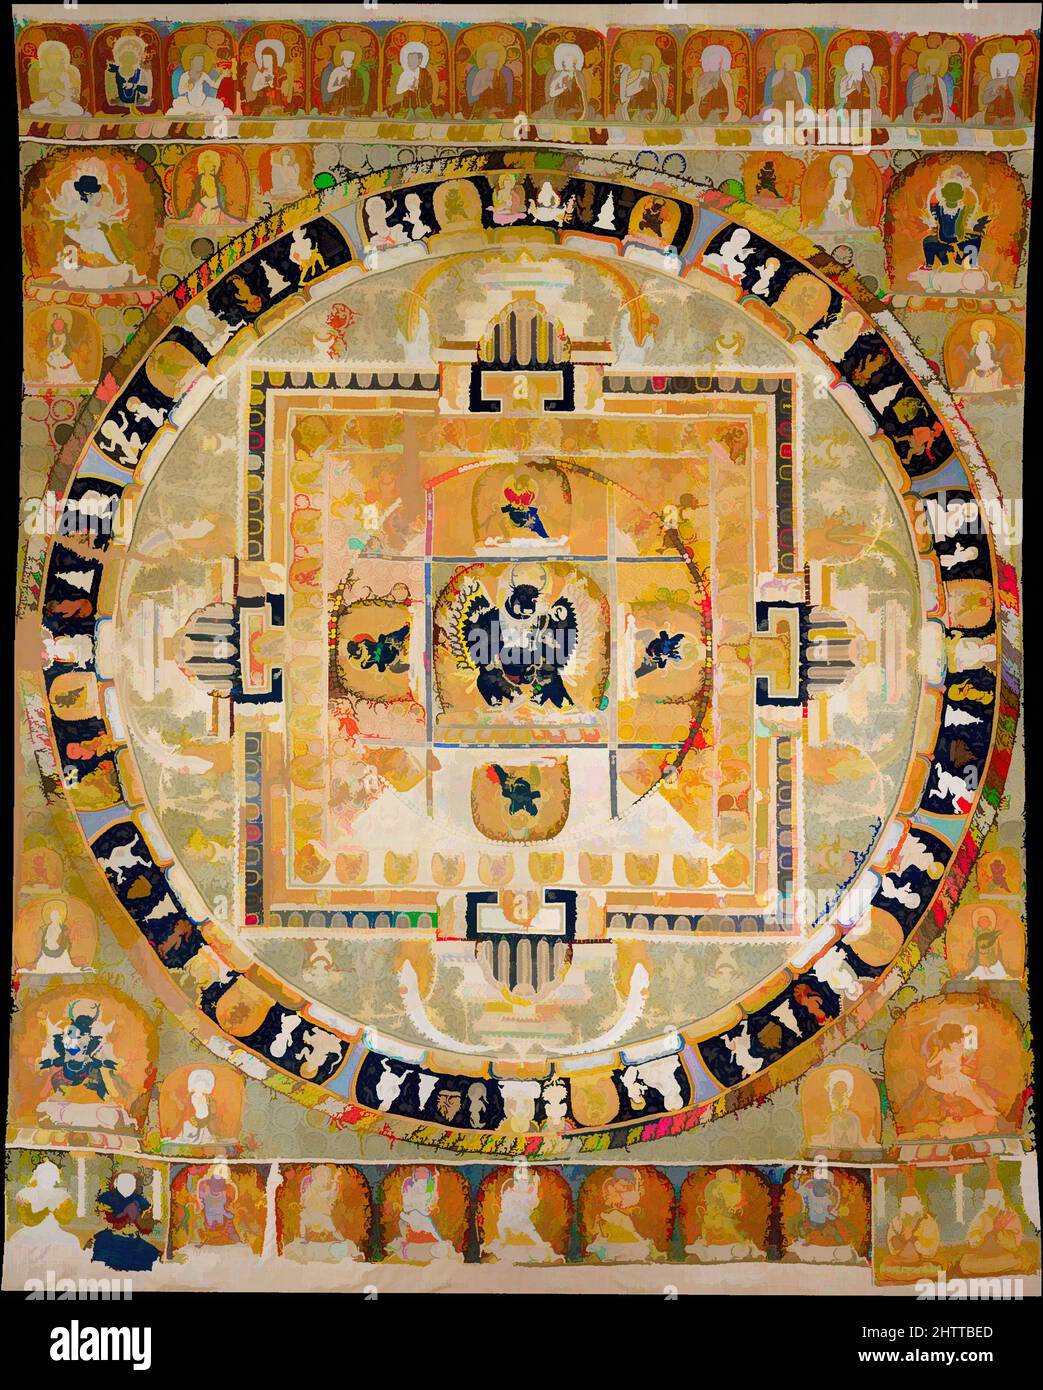 Kunst inspiriert von 元 緙絲大威德金剛曼陀羅, Vajrabhairava Mandala, Yuan-Dynastie (1271–1368), ca. 1330–32, China, Seidenteppich (Kesi), insgesamt: 96 5/8 x 82 5/16 Zoll (245,5 x 209 cm), Textilien-Wandteppiche, dieser Wandteppich, ein Schatz der Abteilung für Asiatische Kunst, wurde mit farbigen Seidenfäden gewebt, Classic Works modernisiert von Artotop mit einem Schuss Moderne. Formen, Farbe und Wert, auffällige visuelle Wirkung auf Kunst. Emotionen durch Freiheit von Kunstwerken auf zeitgemäße Weise. Eine zeitlose Botschaft, die eine wild kreative neue Richtung verfolgt. Künstler, die sich dem digitalen Medium zuwenden und die Artotop NFT erschaffen Stockfoto